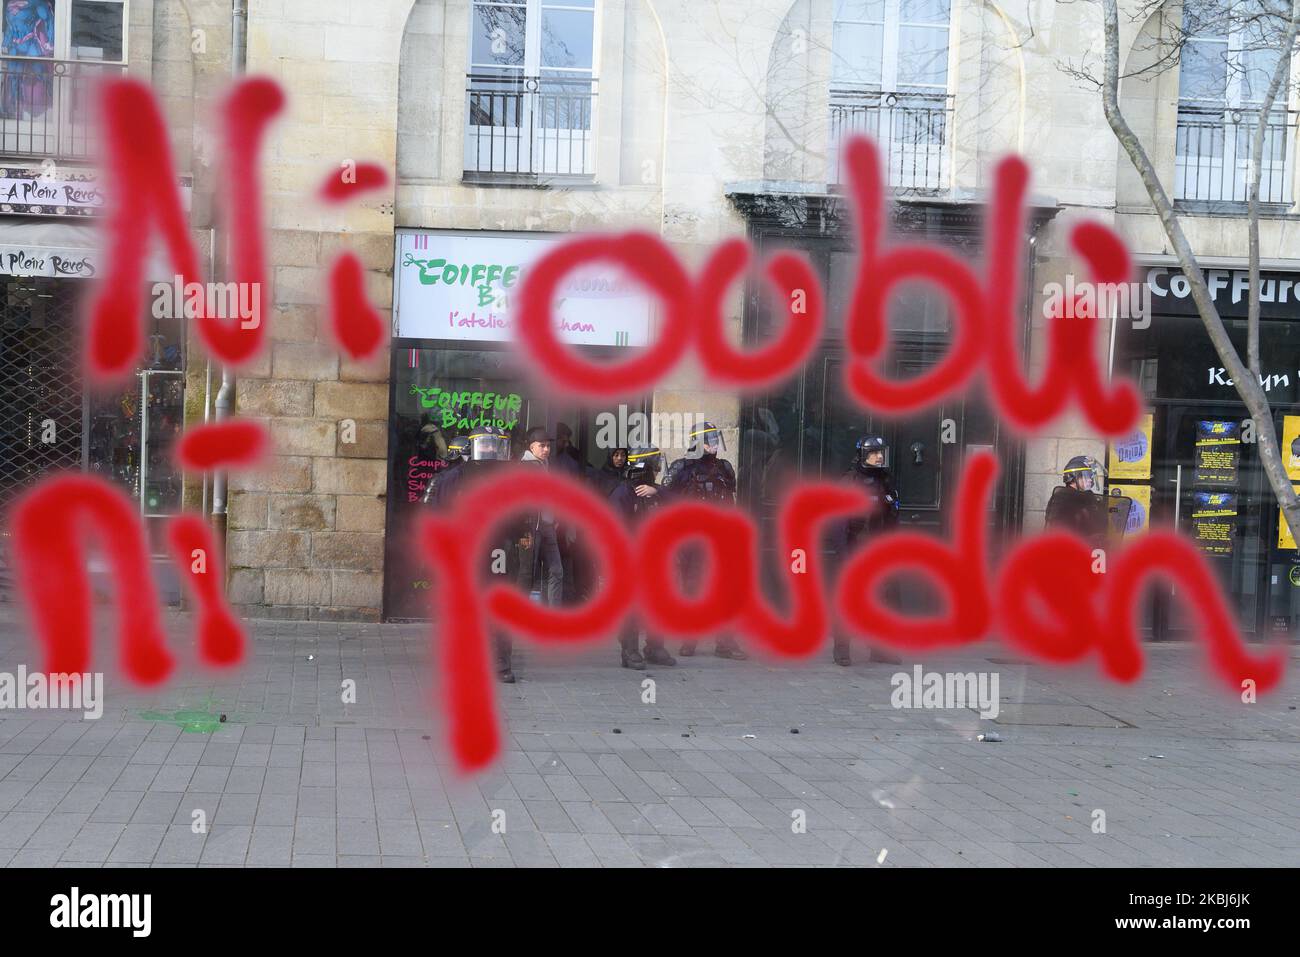 Tag 'ni oblitvion, ni pardon' en référence à la violence policière sur la touche de la manifestation contre 'des projets destructeurs, inutiles et imposéss' à Nantes (France) sur 29 février 2020 (photo d'Estelle Ruiz/NurPhoto) Banque D'Images